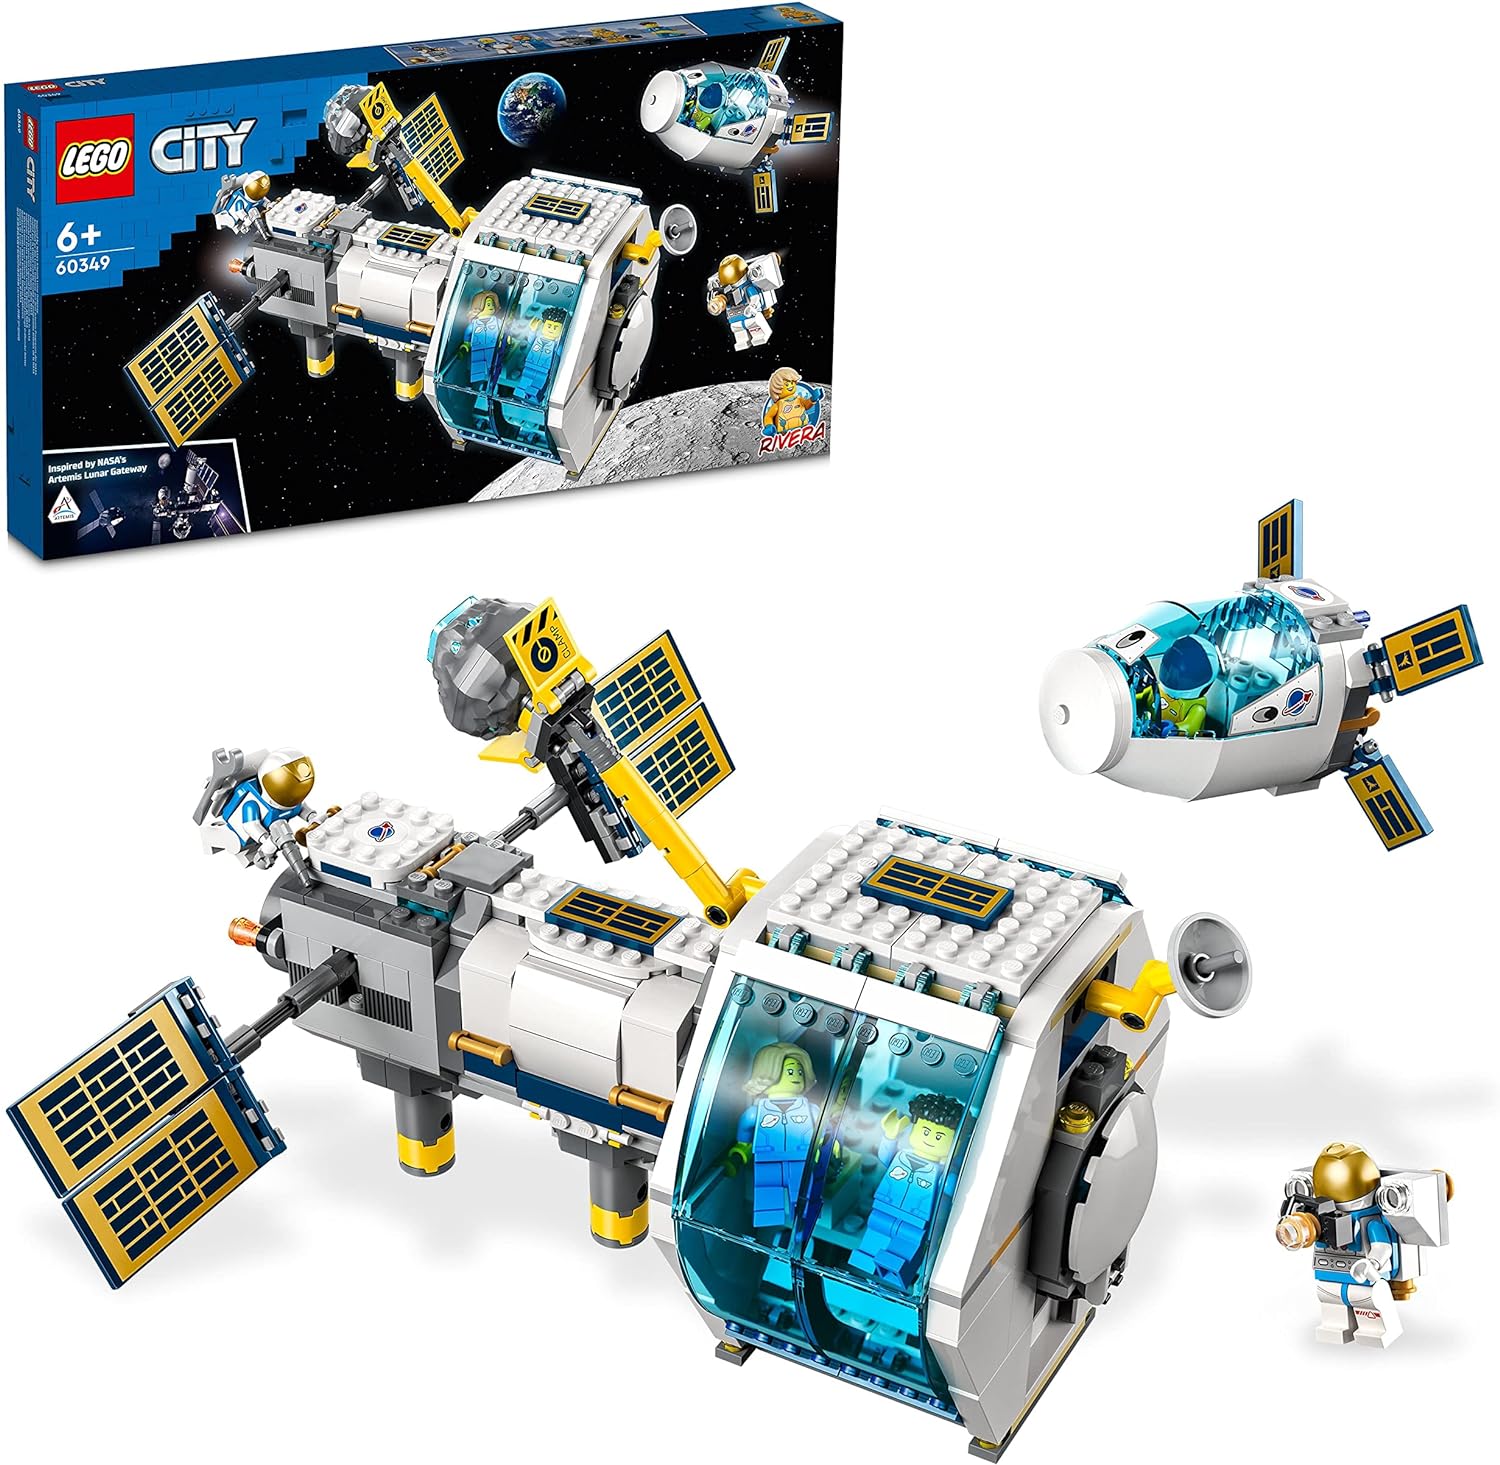 Lego 60349 Lunar Space Station